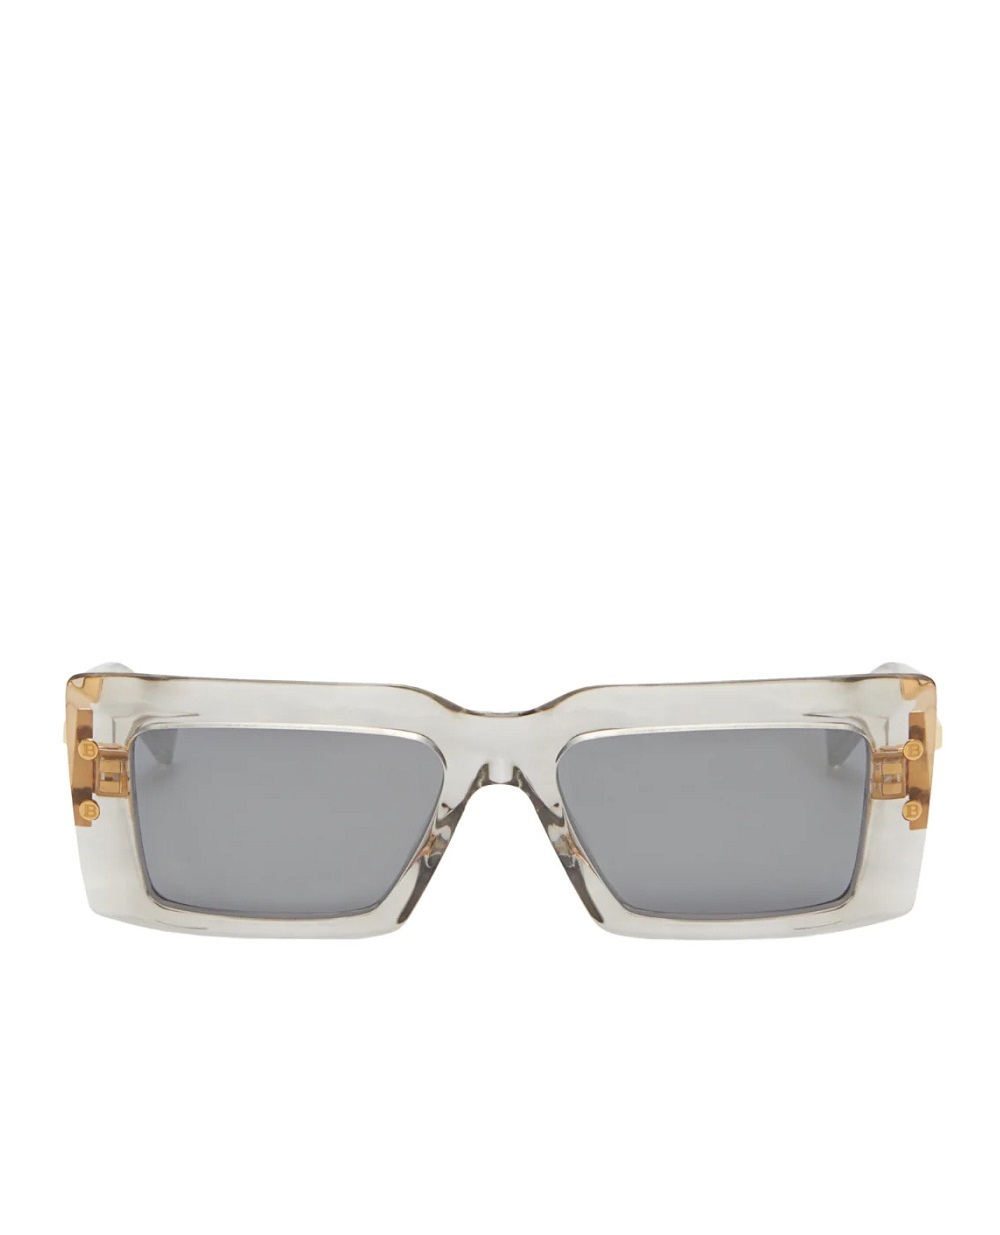 Солнцезащитные очки Balmain BPS-145C-53, серый цвет • Купить в интернет-магазине Kameron